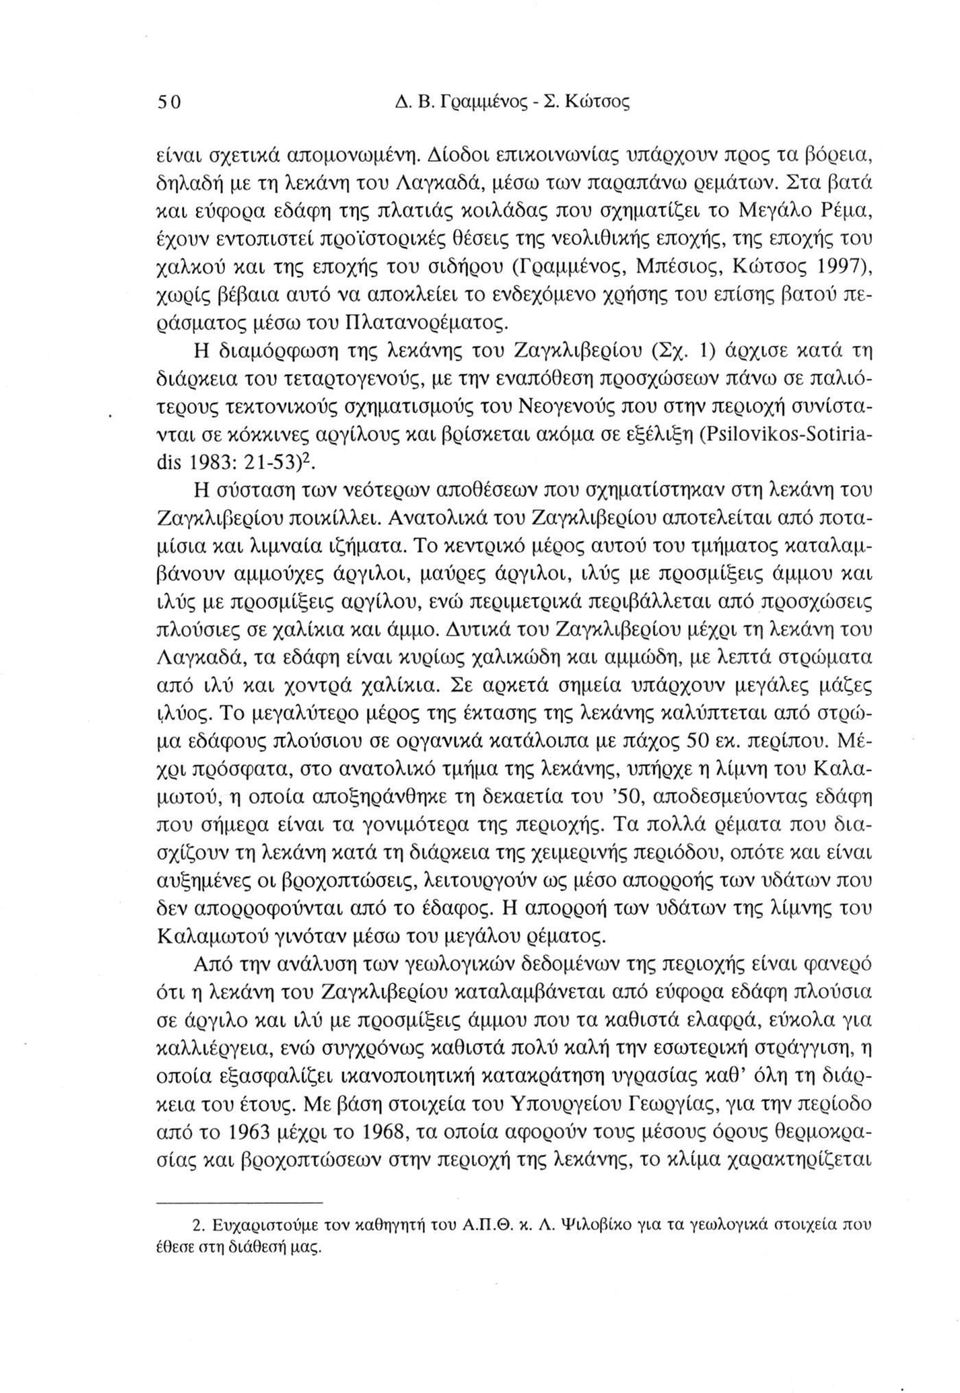 Μπέσιος, Κώτσος 1997), χωρίς βέβαια αυτό να αποκλείει το ενδεχόμενο χρήσης του επίσης βατού περάσματος μέσω του Πλατανορέματος. Η διαμόρφωση της λεκάνης του Ζαγκλιβερίου (Σχ.